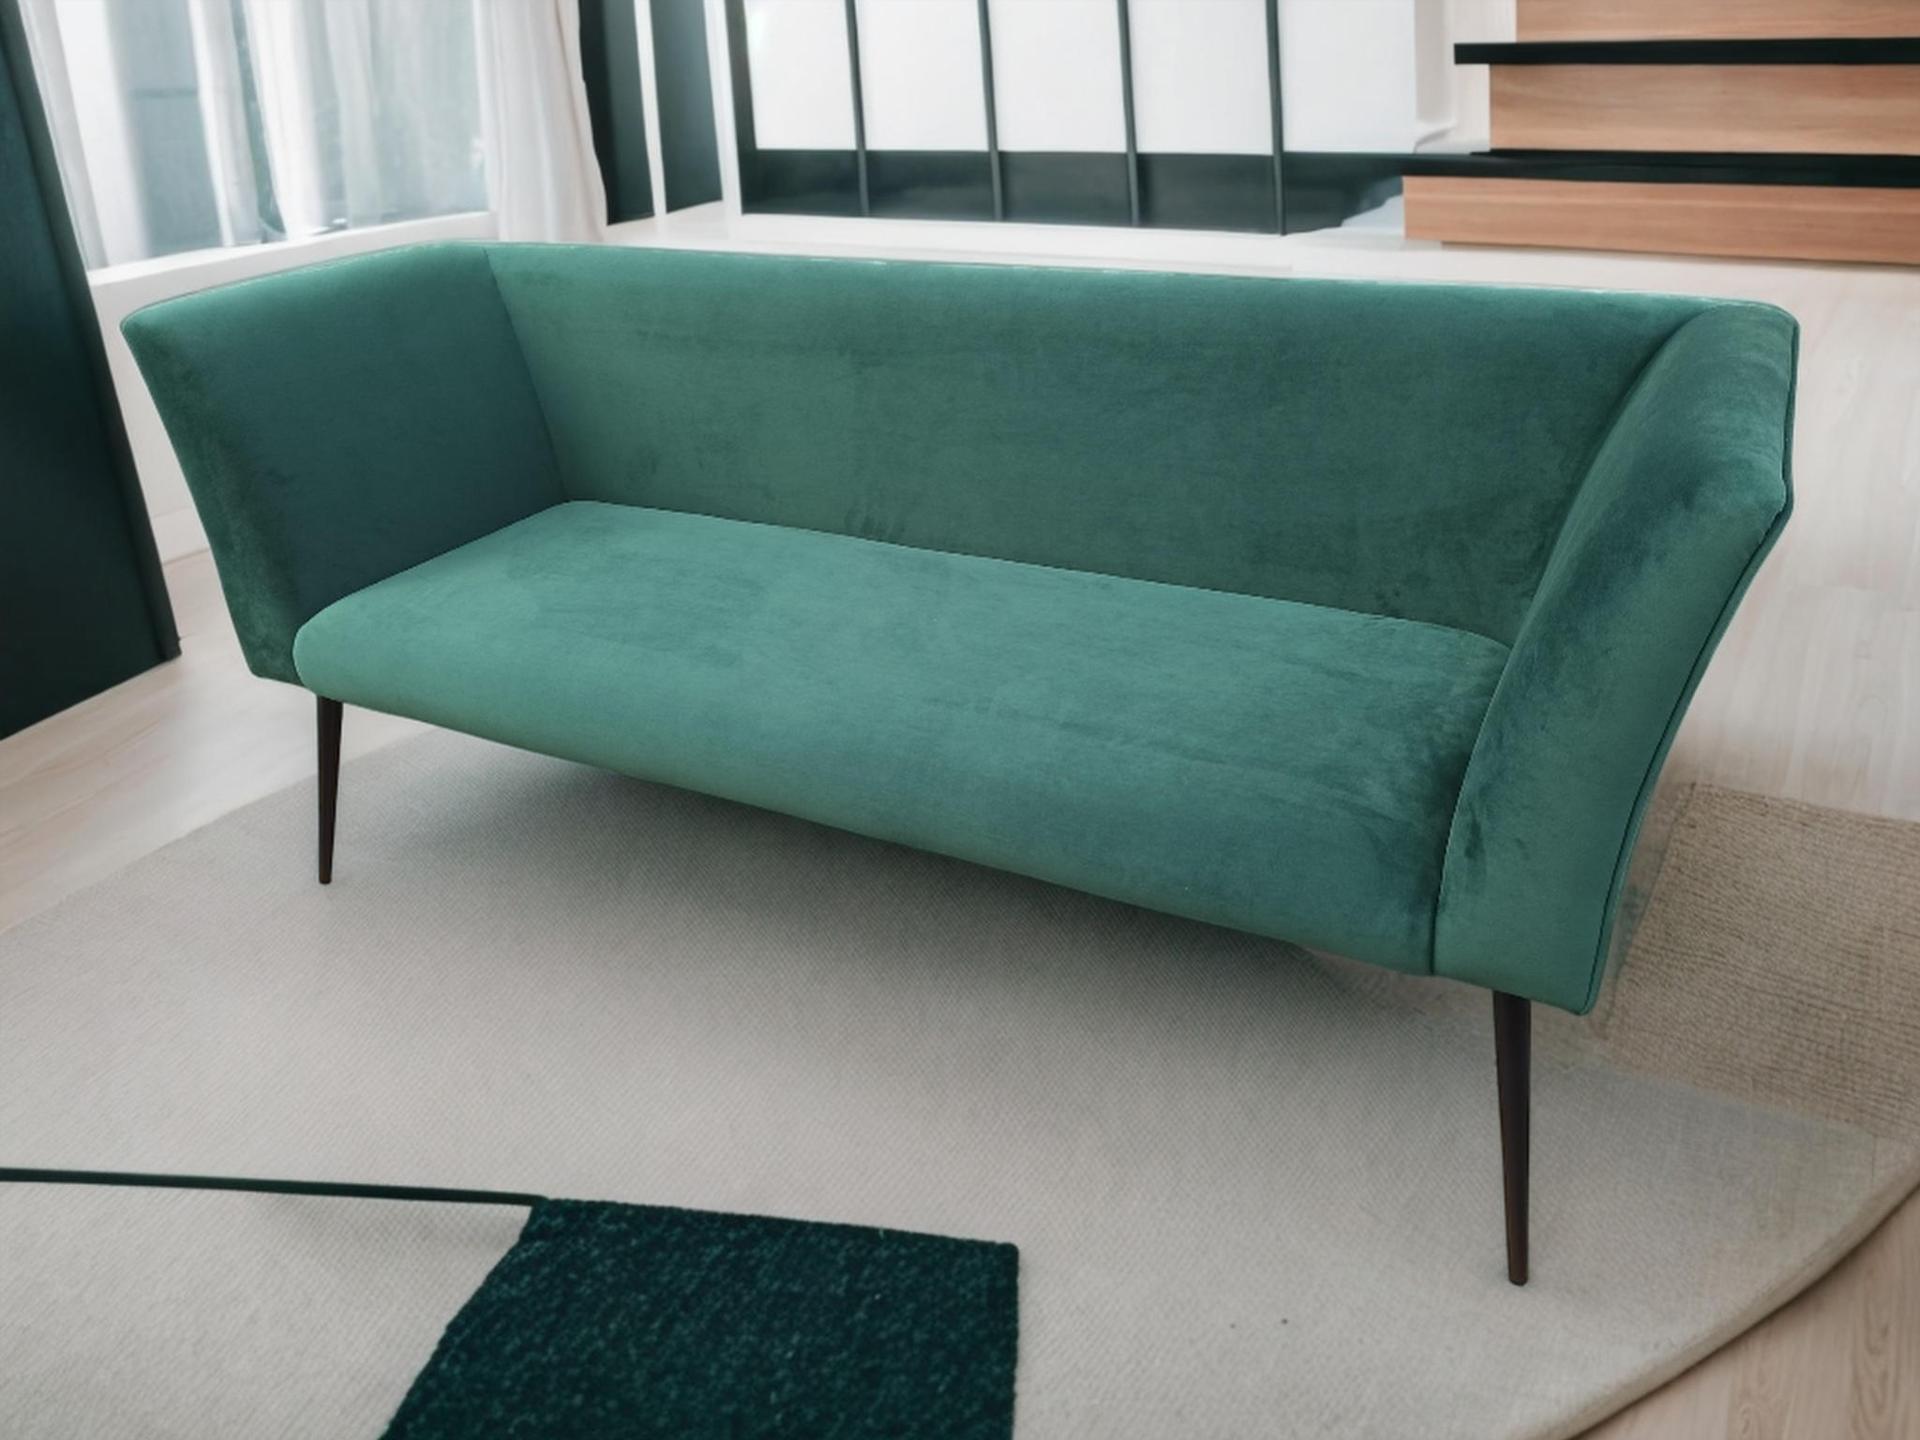 zielona kanapa w salonie